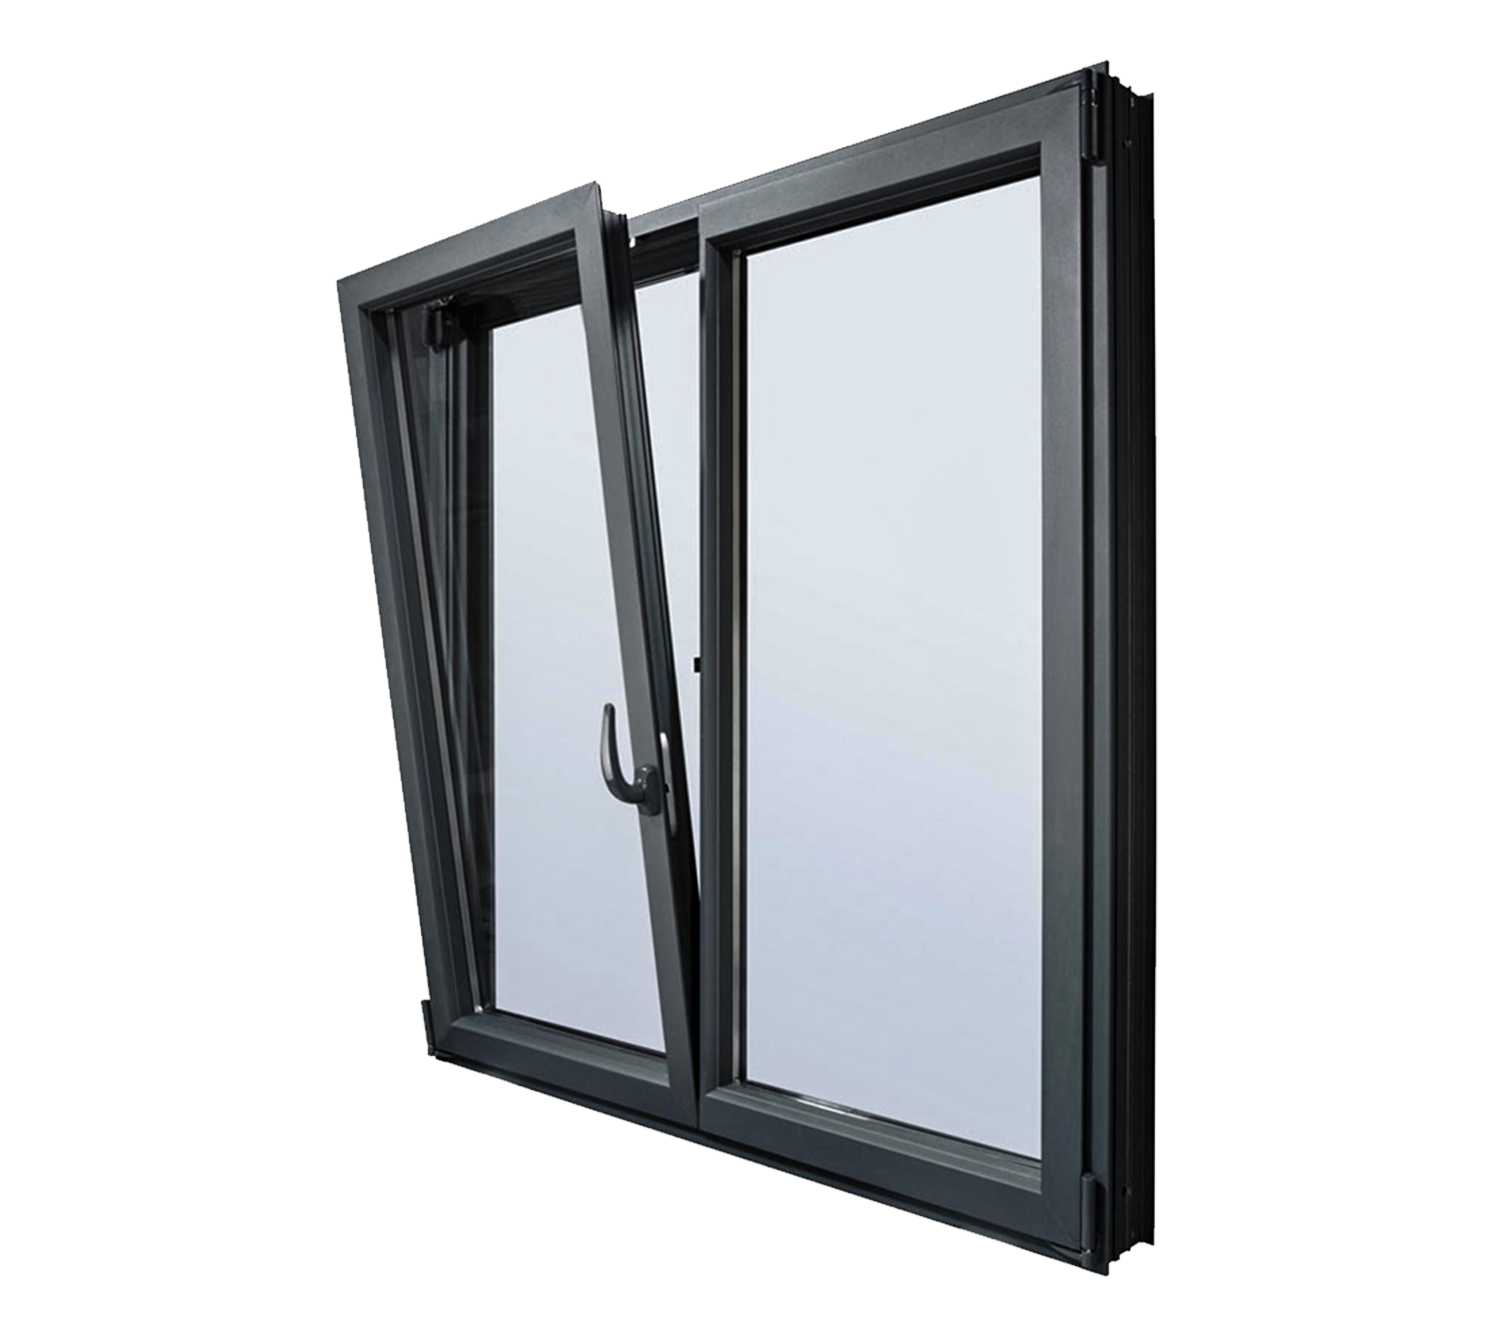 Металла пластиковые окна. Akfa Thermo 7000. Алюминиевые окна Виднал. Окна Engelberg 65 Thermo. VIDNAL алюминиевый профиль.